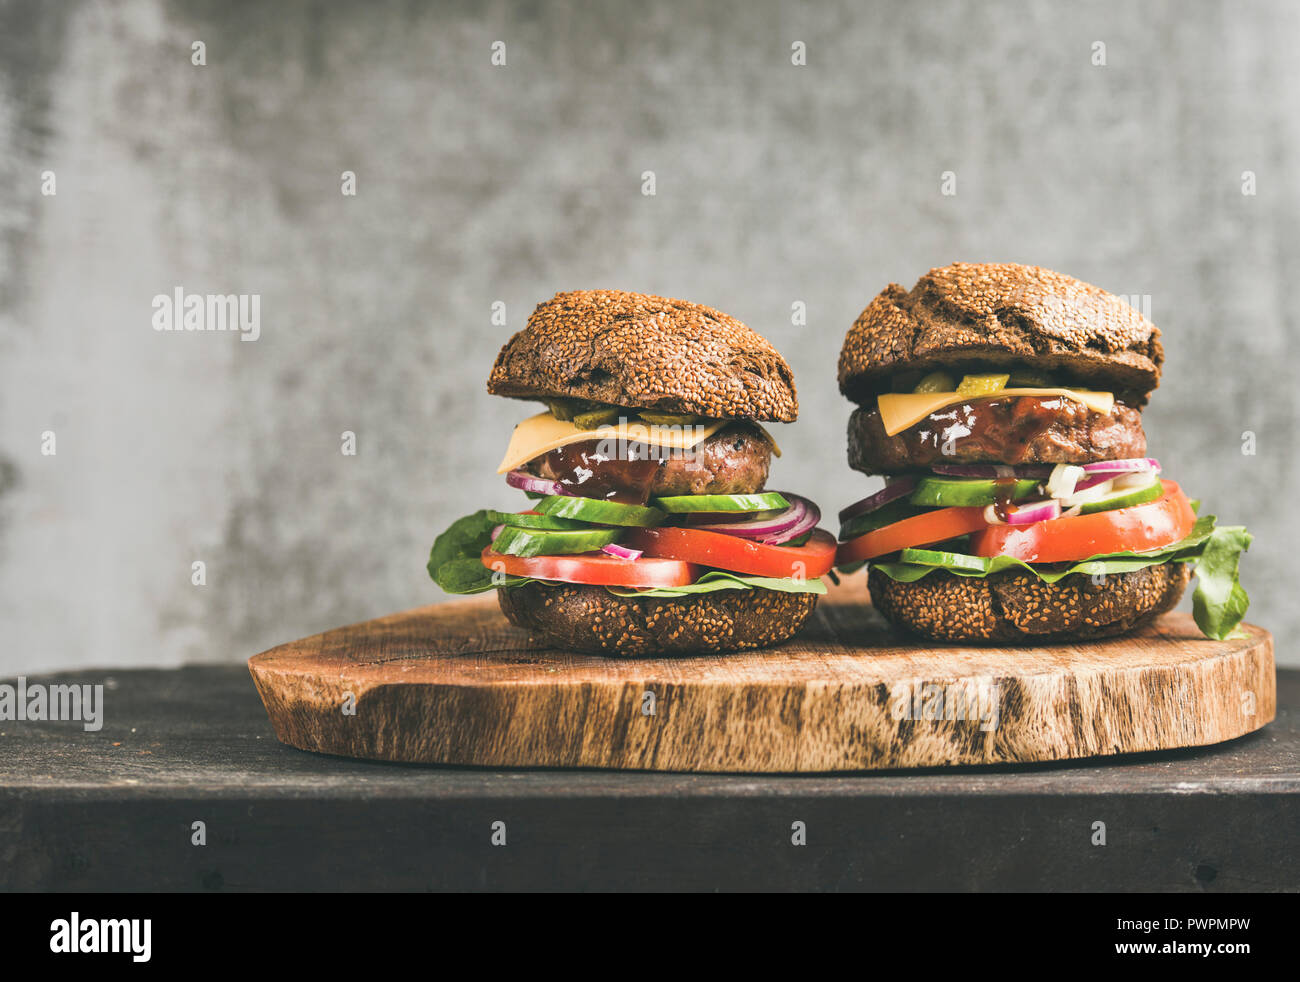 Le carni bovine cheeseburger con salsa barbecue rustico di legno, grigio muro di cemento a sfondo, copia dello spazio. Comfort food, burger bistro concept Foto Stock